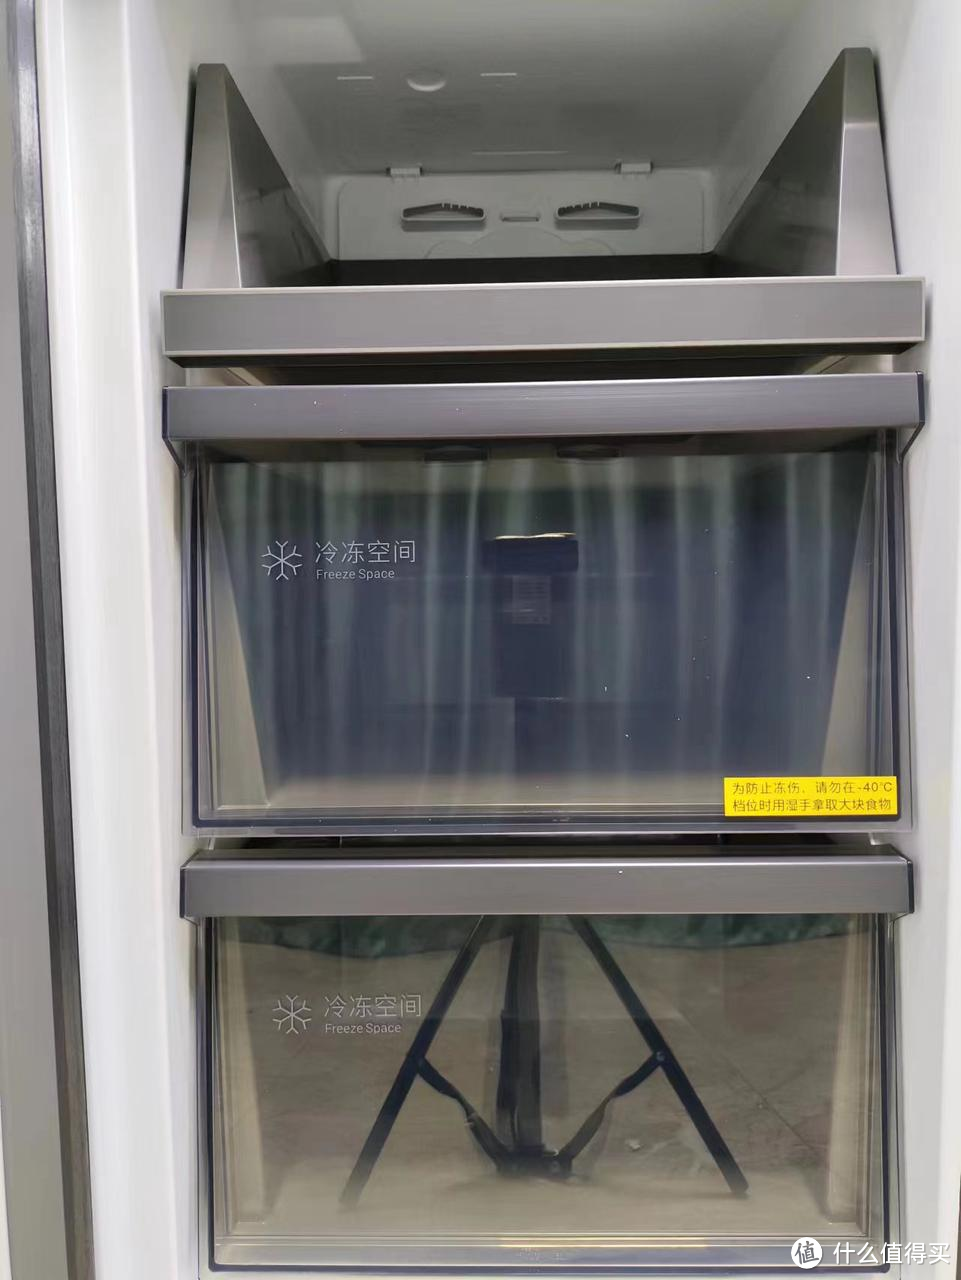 高端冰箱和普通冰箱有什么区别？年货节买高端哪款冰箱好？本文将从多个维度横测多款高端冰箱！